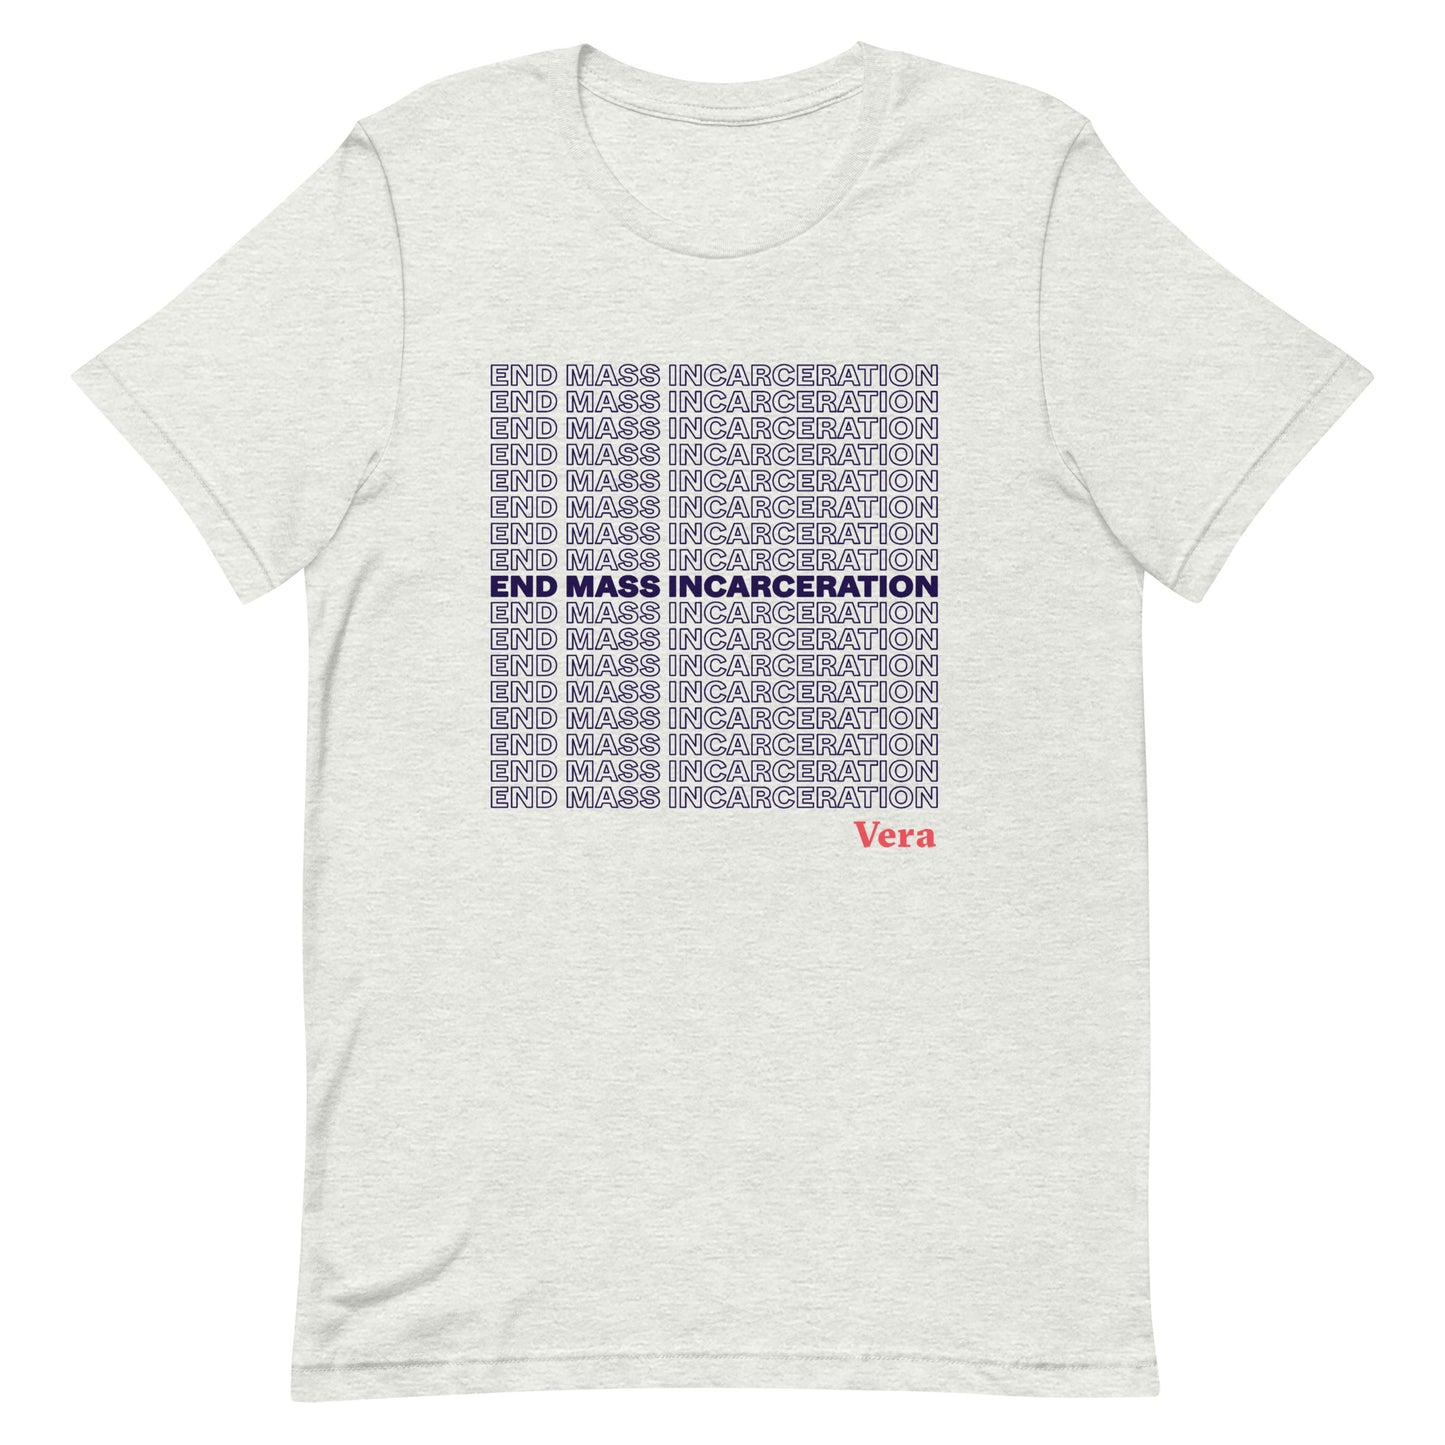 "End Mass Incarceration" Tee Shirt